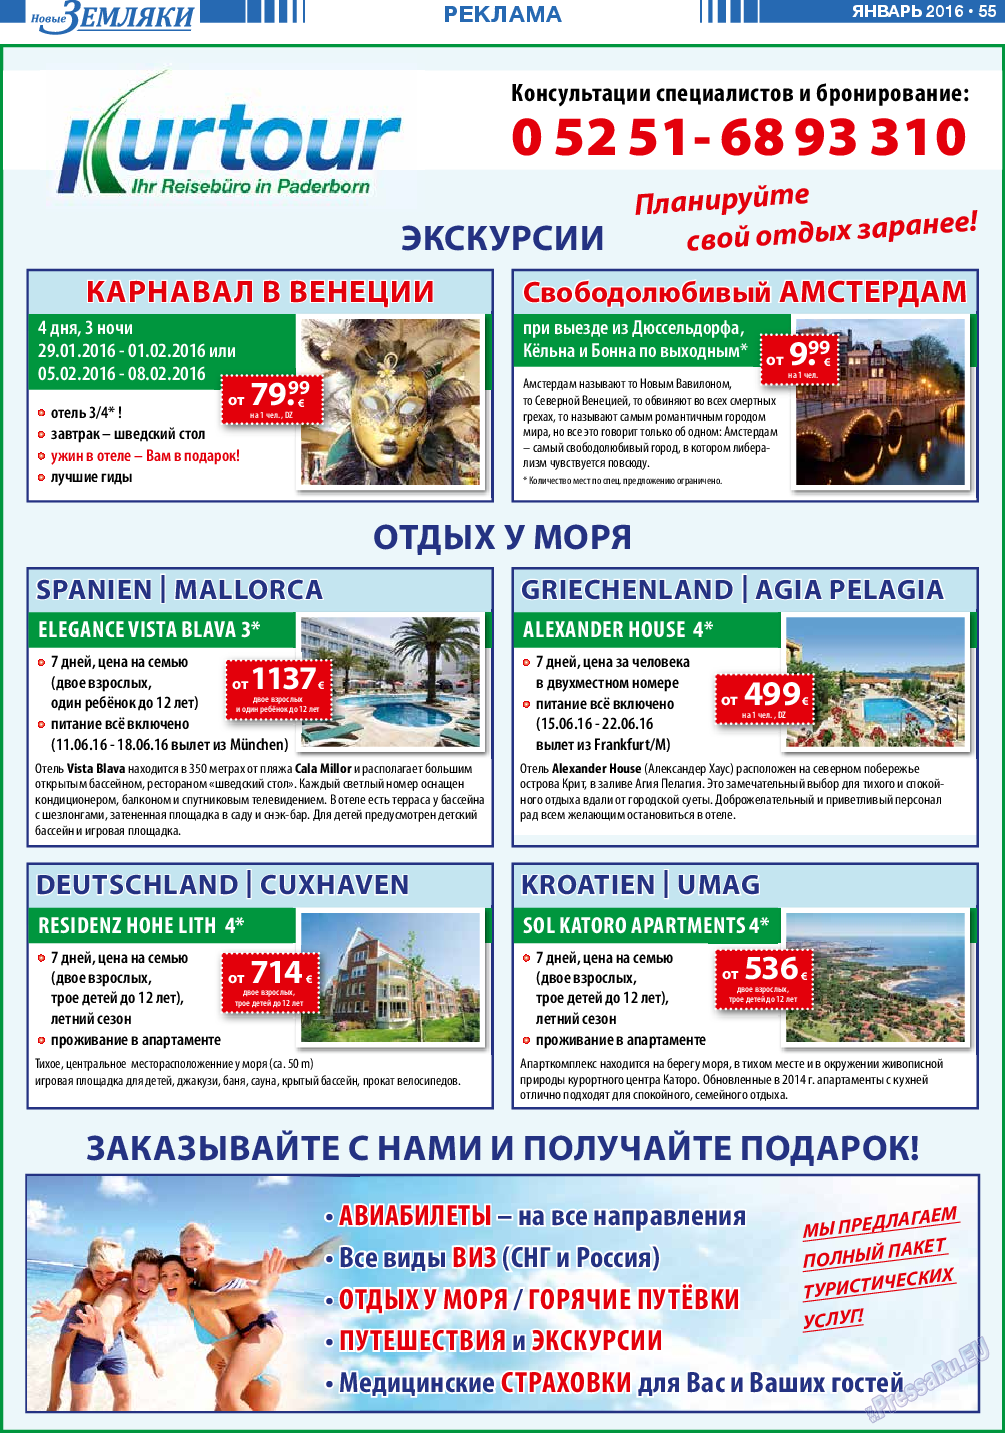 Новые Земляки (газета). 2016 год, номер 1, стр. 55